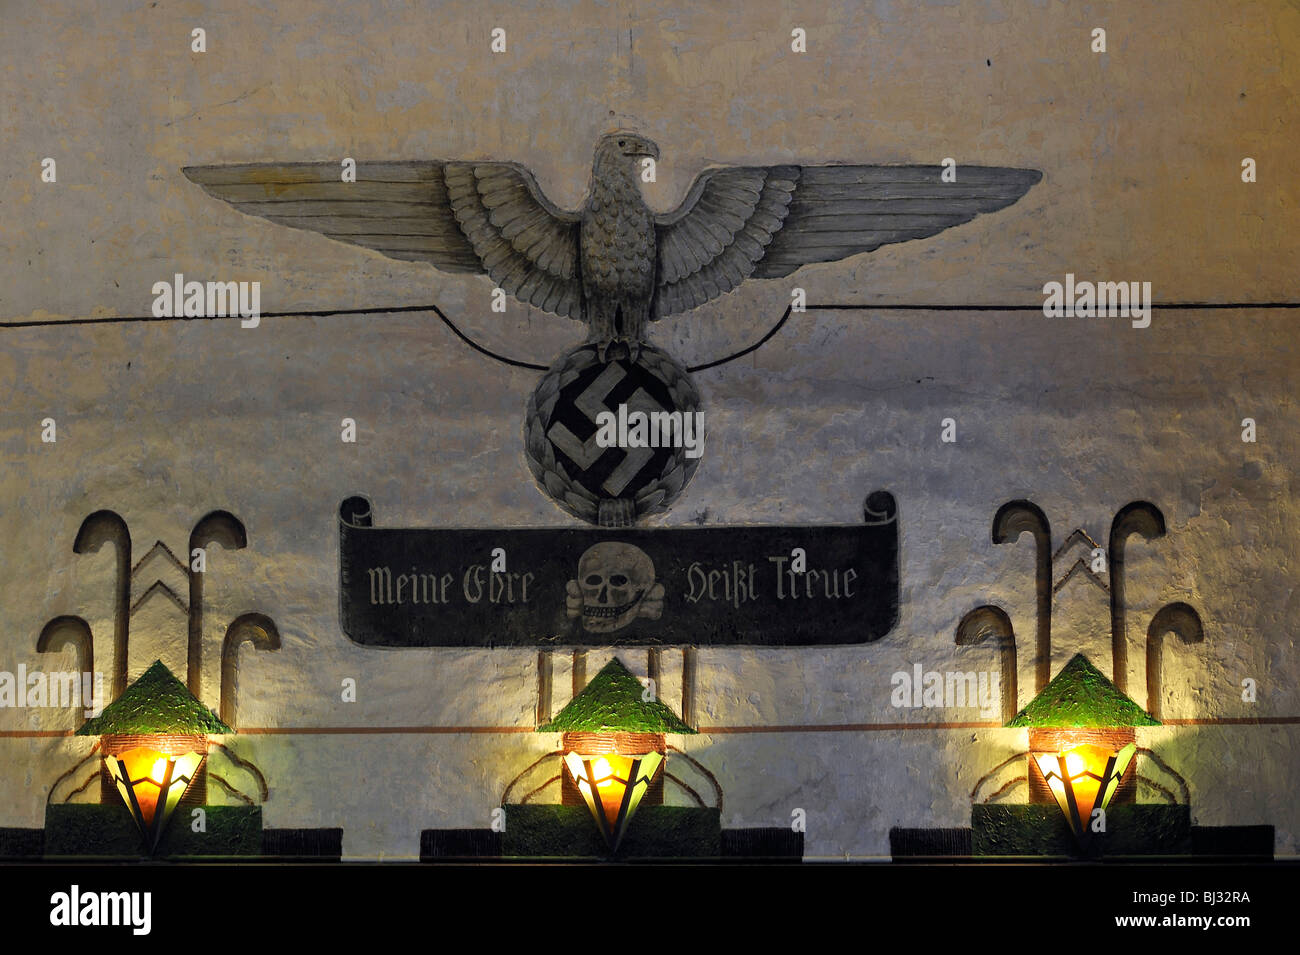 L'allemand de l'aigle et croix gammée des nazis / Gestapo au Fort Breendonk, Seconde Guerre mondiale, deux camps de concentration en Belgique Banque D'Images